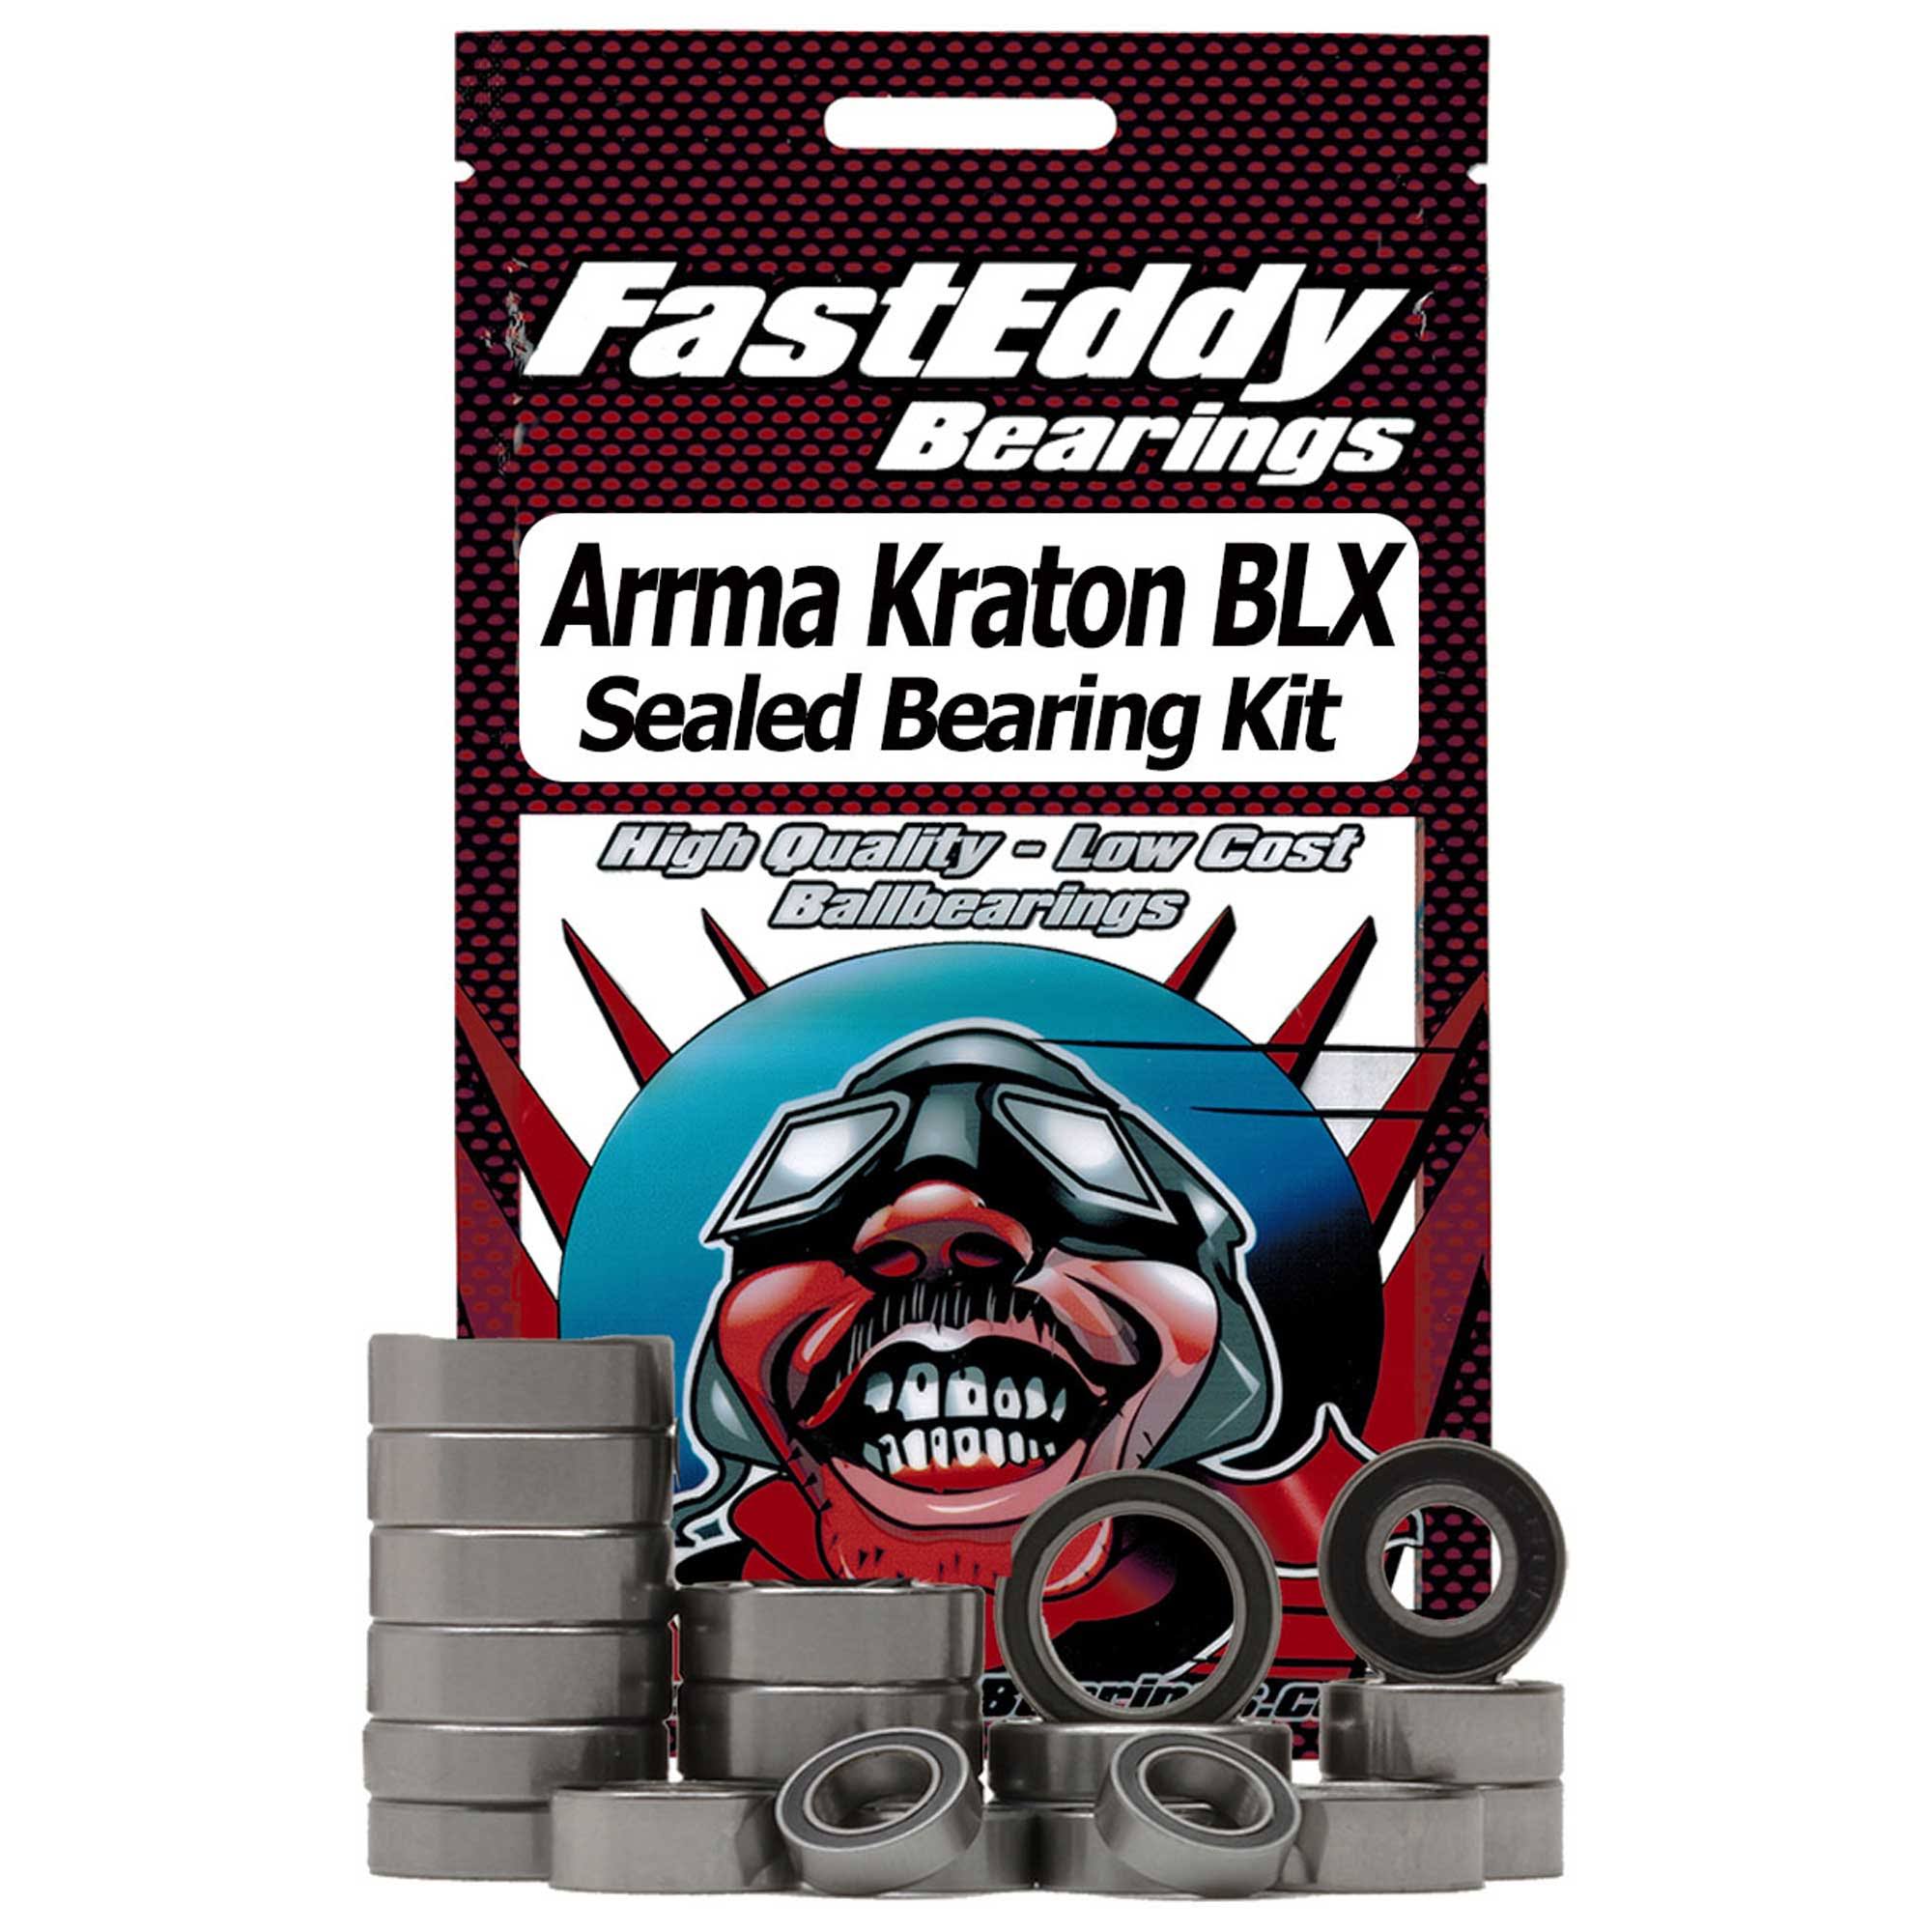 FastEddy Bearings Sealed Bearing Kit-ARA Kraton BLX TFE2628